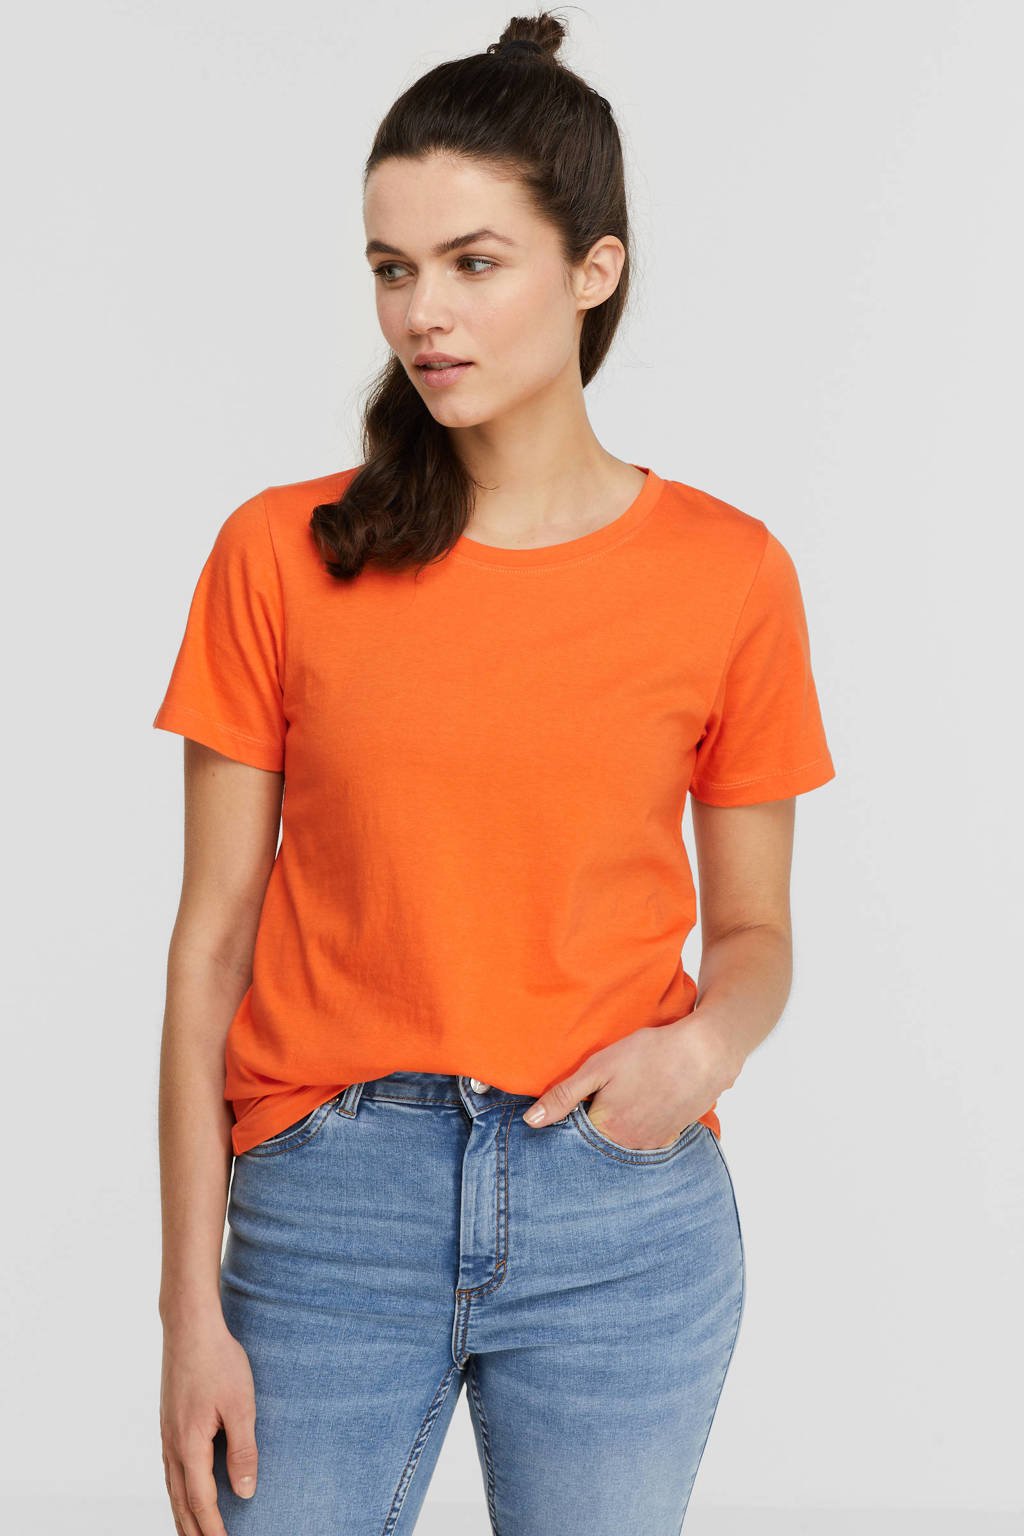 Verrijking Blij rustig aan anytime T-shirt oranje | wehkamp